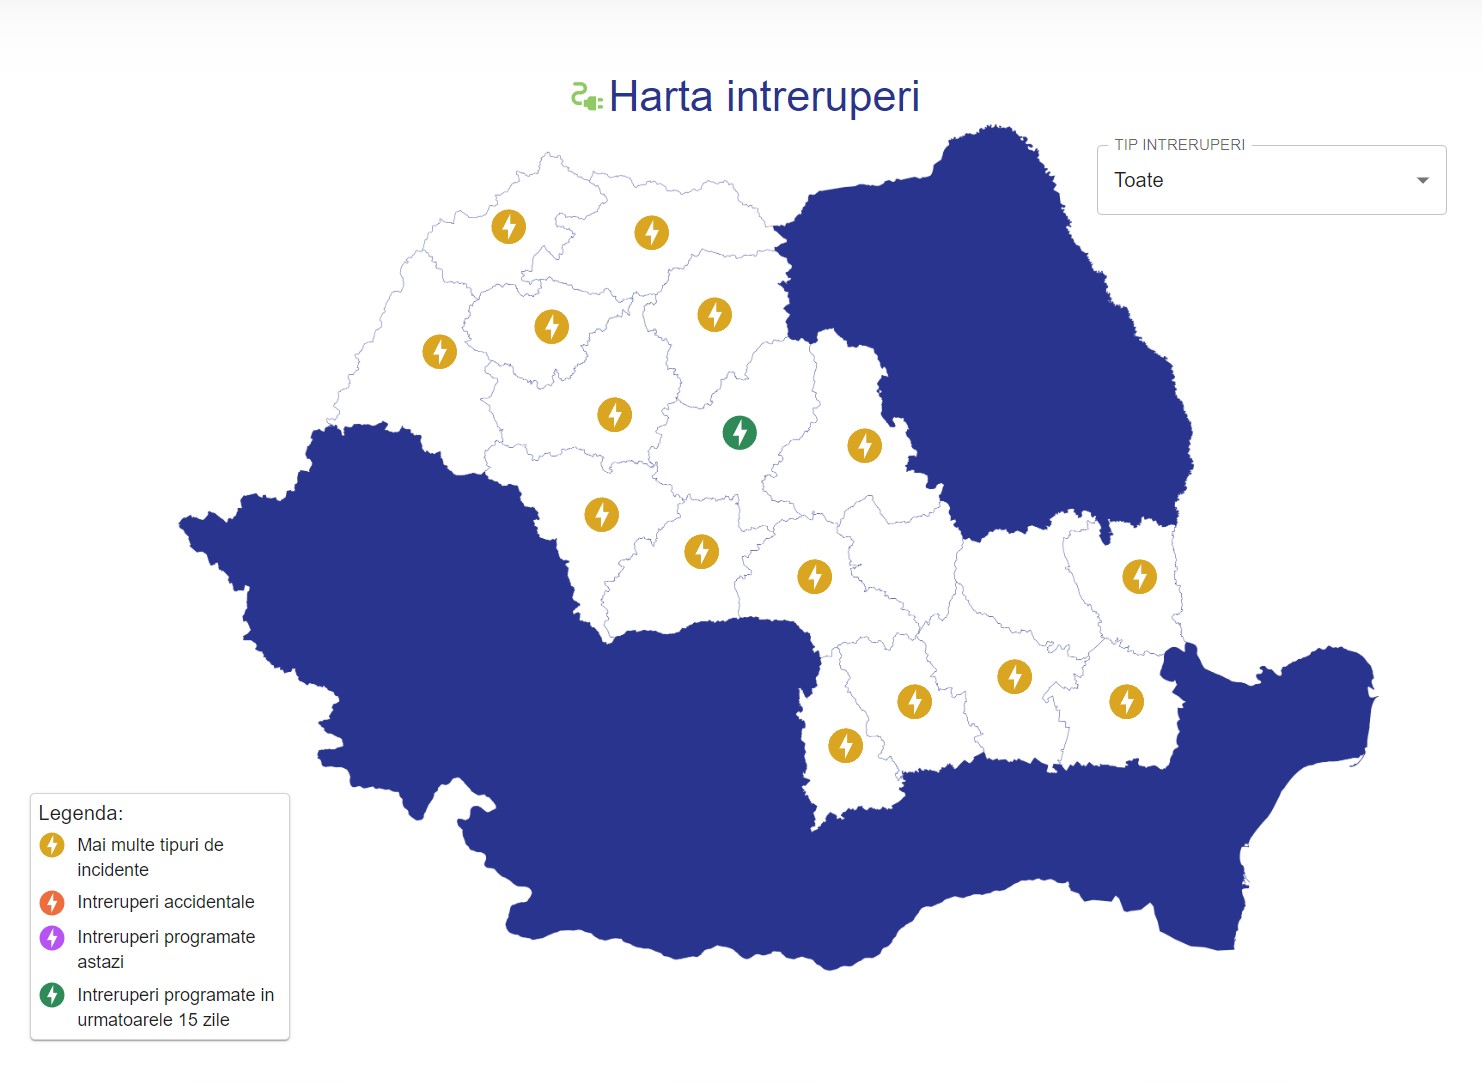 Dificultatile Oficiale ELECTRICA Anunturi ULTIM MOMENT Clientii Romania intreruperi acum